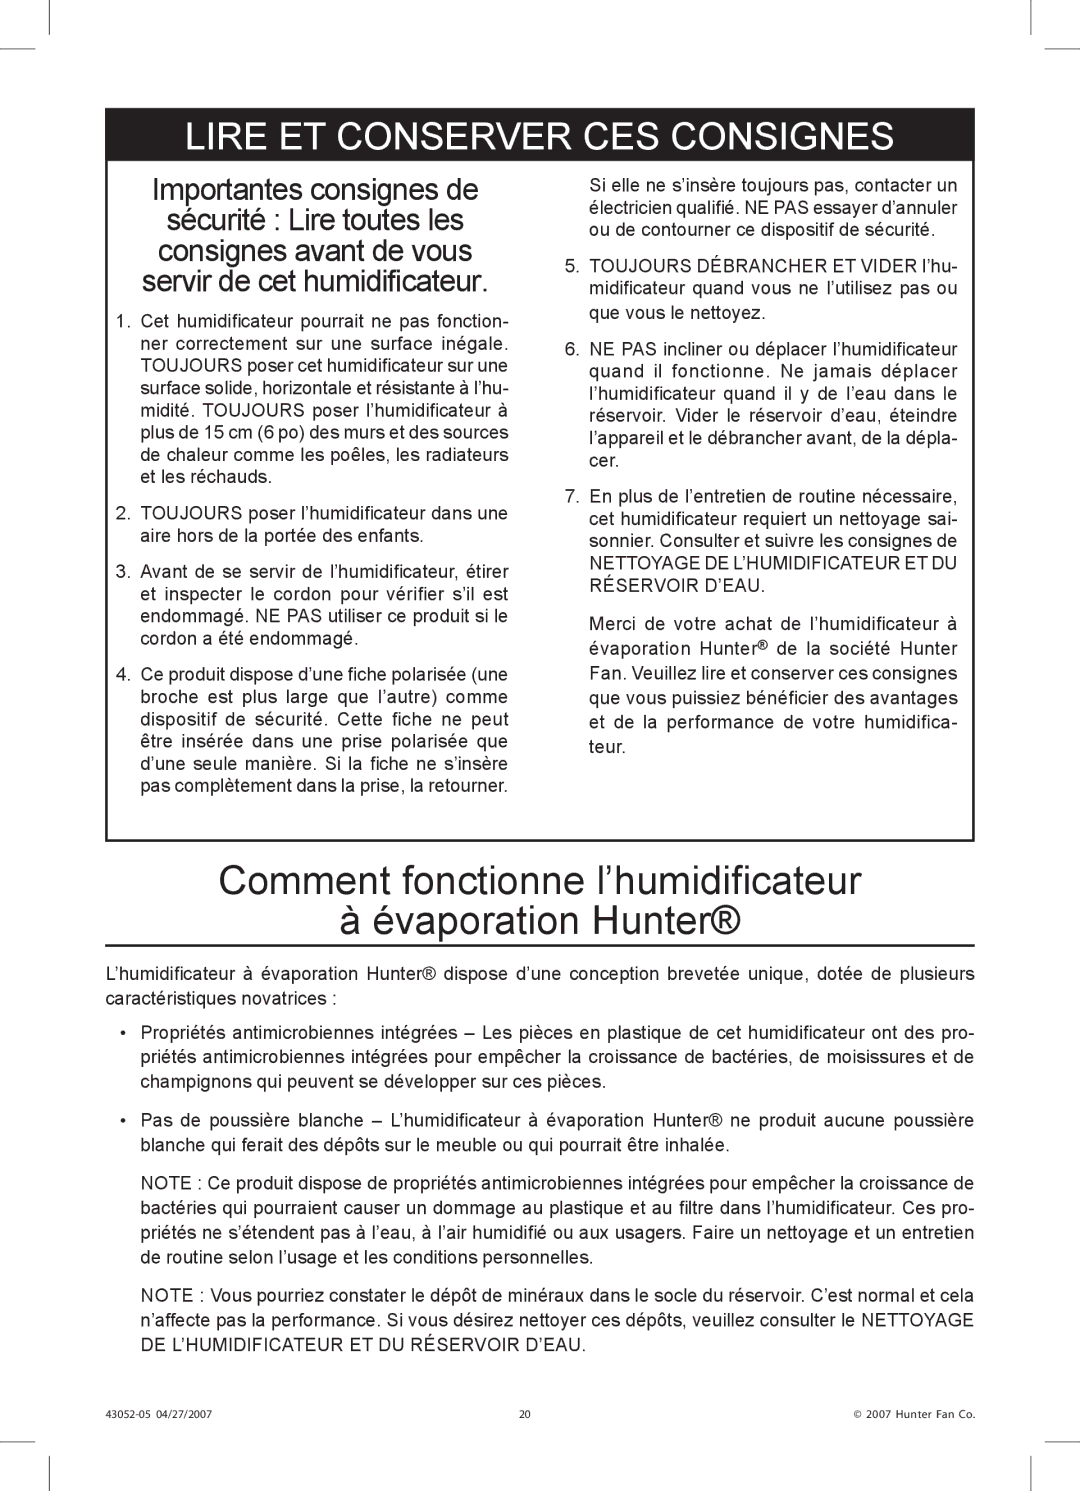 Hunter Fan 38200 manual Comment fonctionne l’humidificateur Évaporation Hunter, Lire ET Conserver CES Consignes 